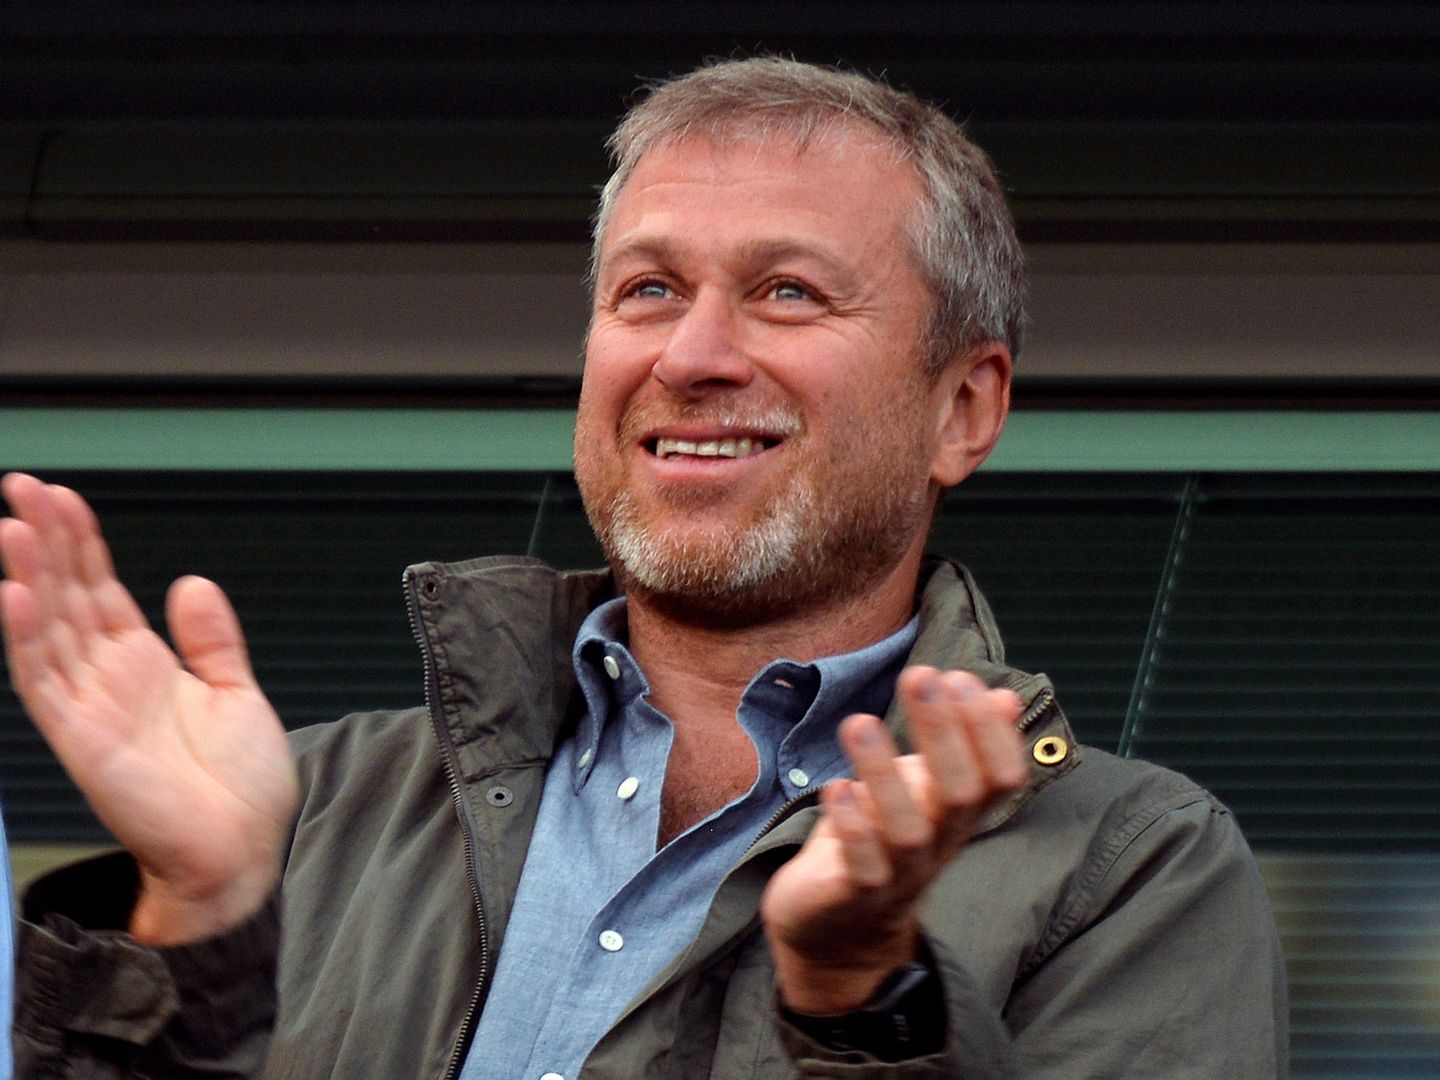 El multimillonario ruso Roman Abramovich, propietario del Chelsea, aplaude durante un partido en Stamford Bridge, Londres, en agosto de 2013. (Reuters)